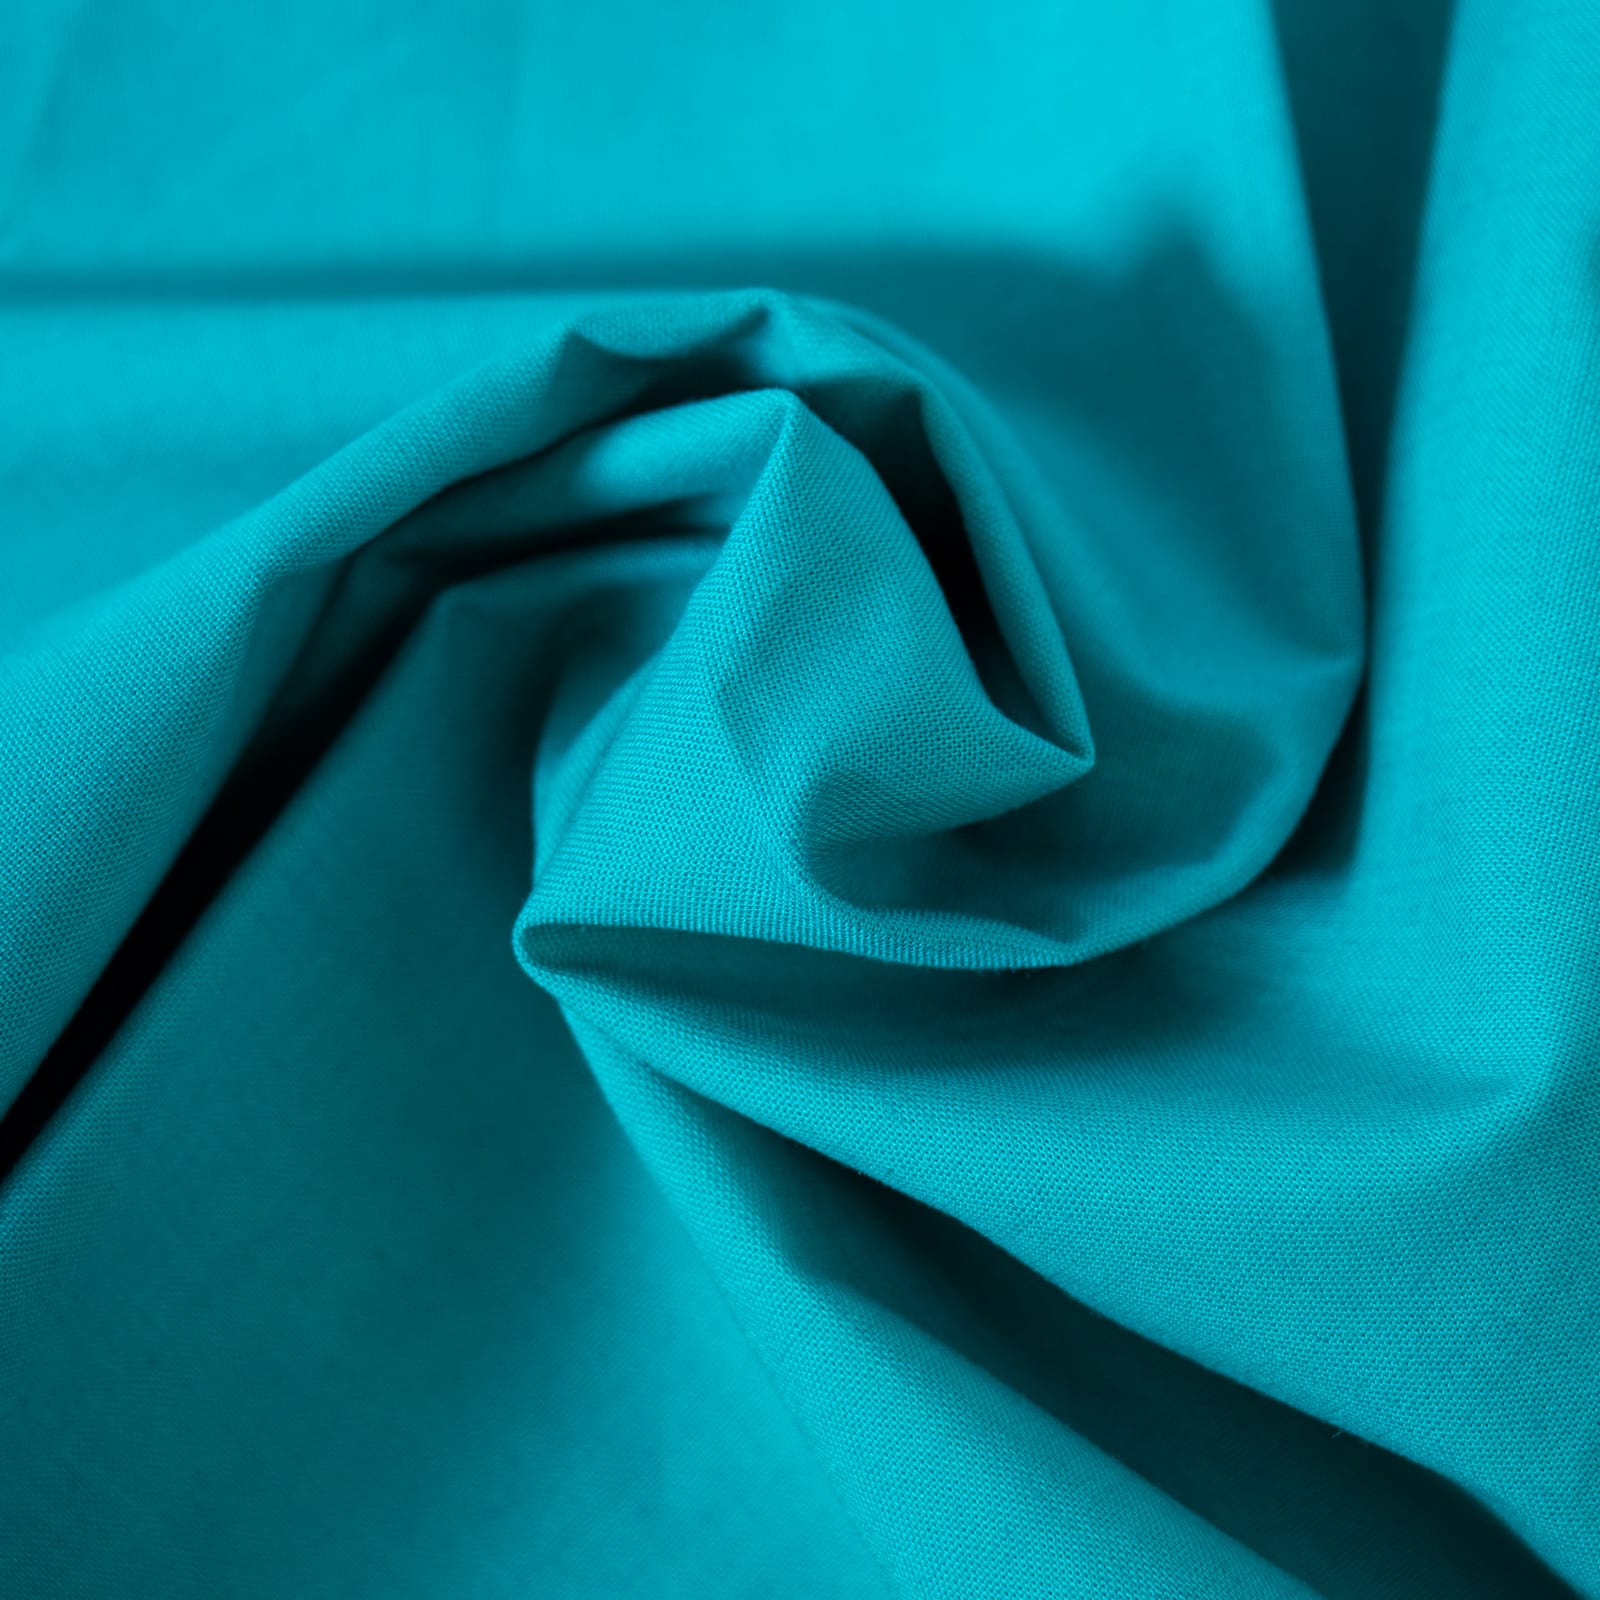 Caribbean Sea Premium Quilt Cotton Fabric